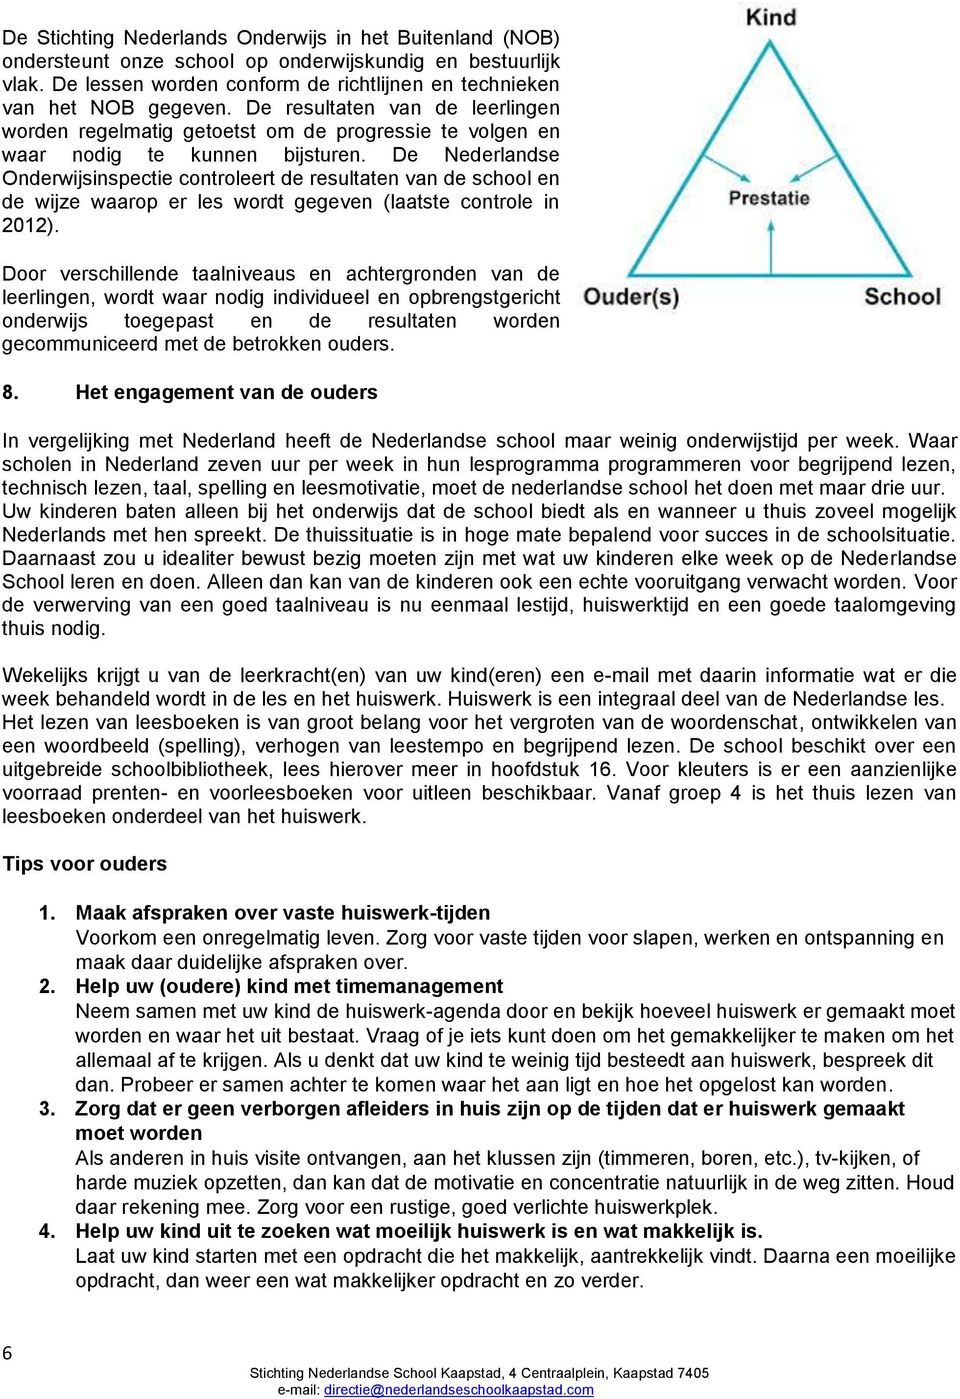 De Nederlandse Onderwijsinspectie controleert de resultaten van de school en de wijze waarop er les wordt gegeven (laatste controle in 2012).